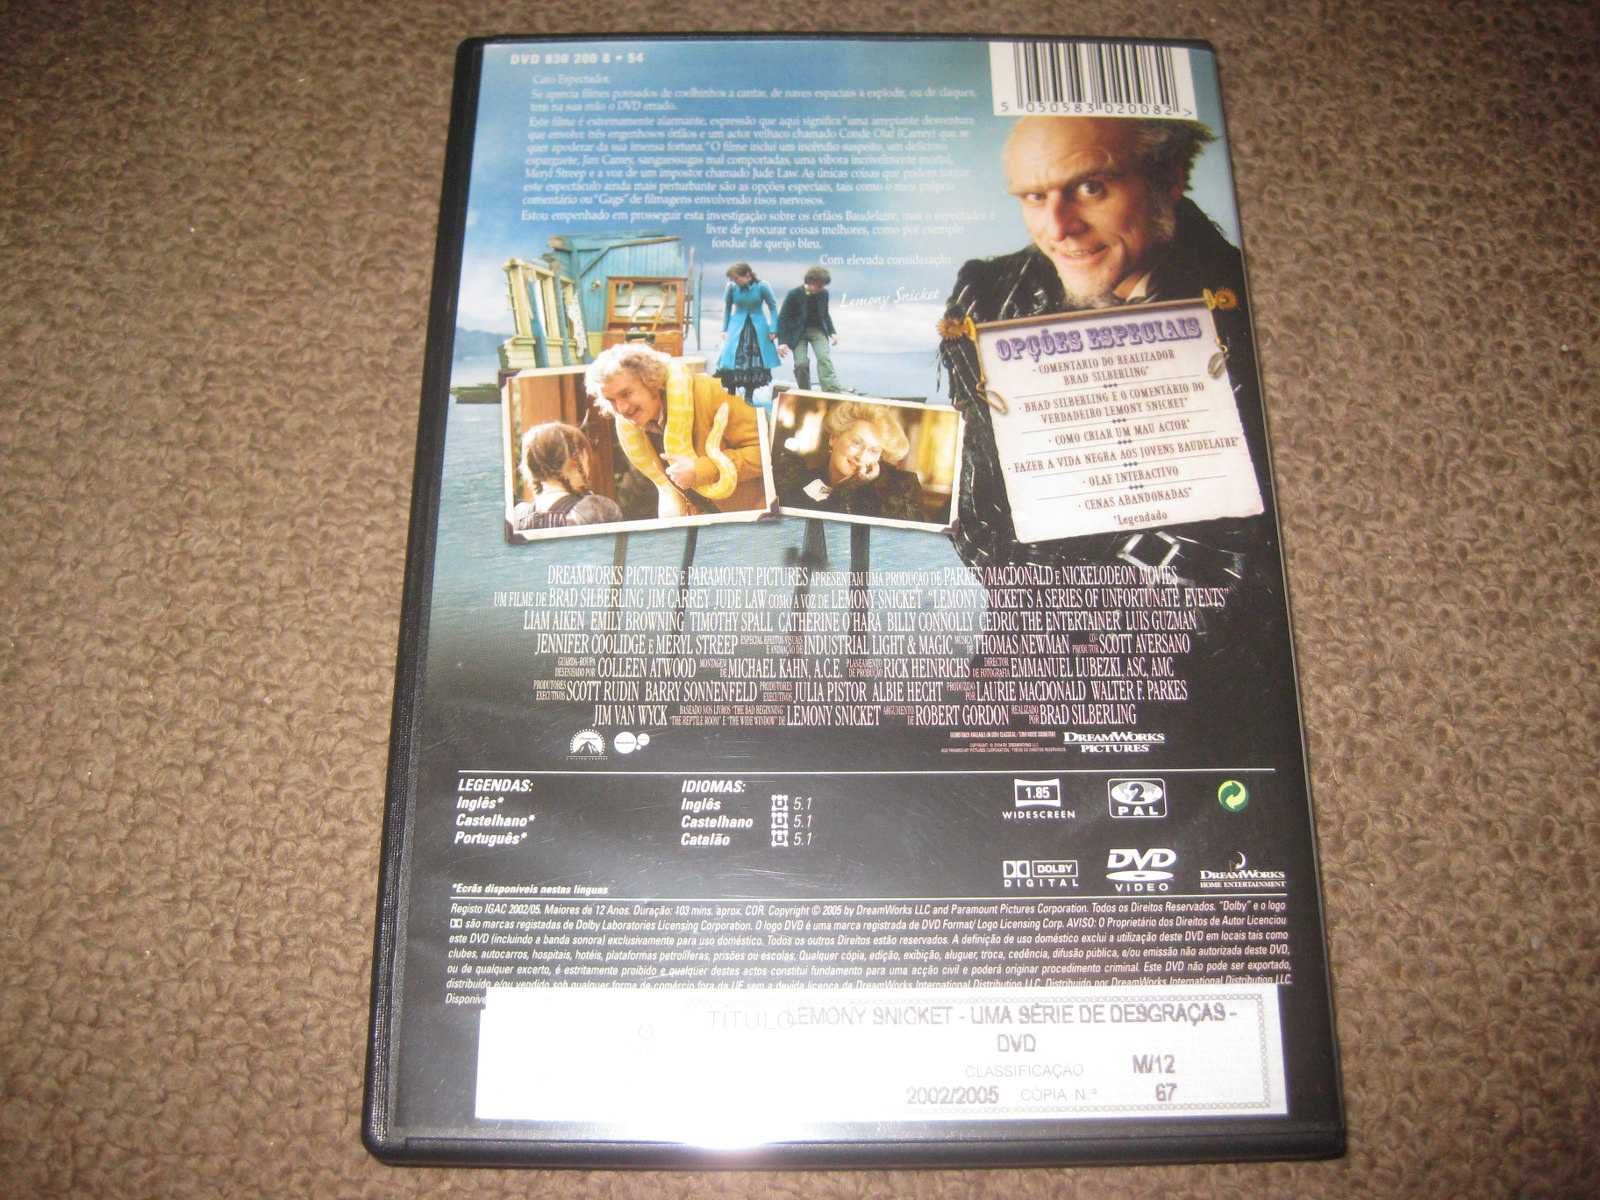 DVD "Uma Série de Desgraças" com Jim Carrey